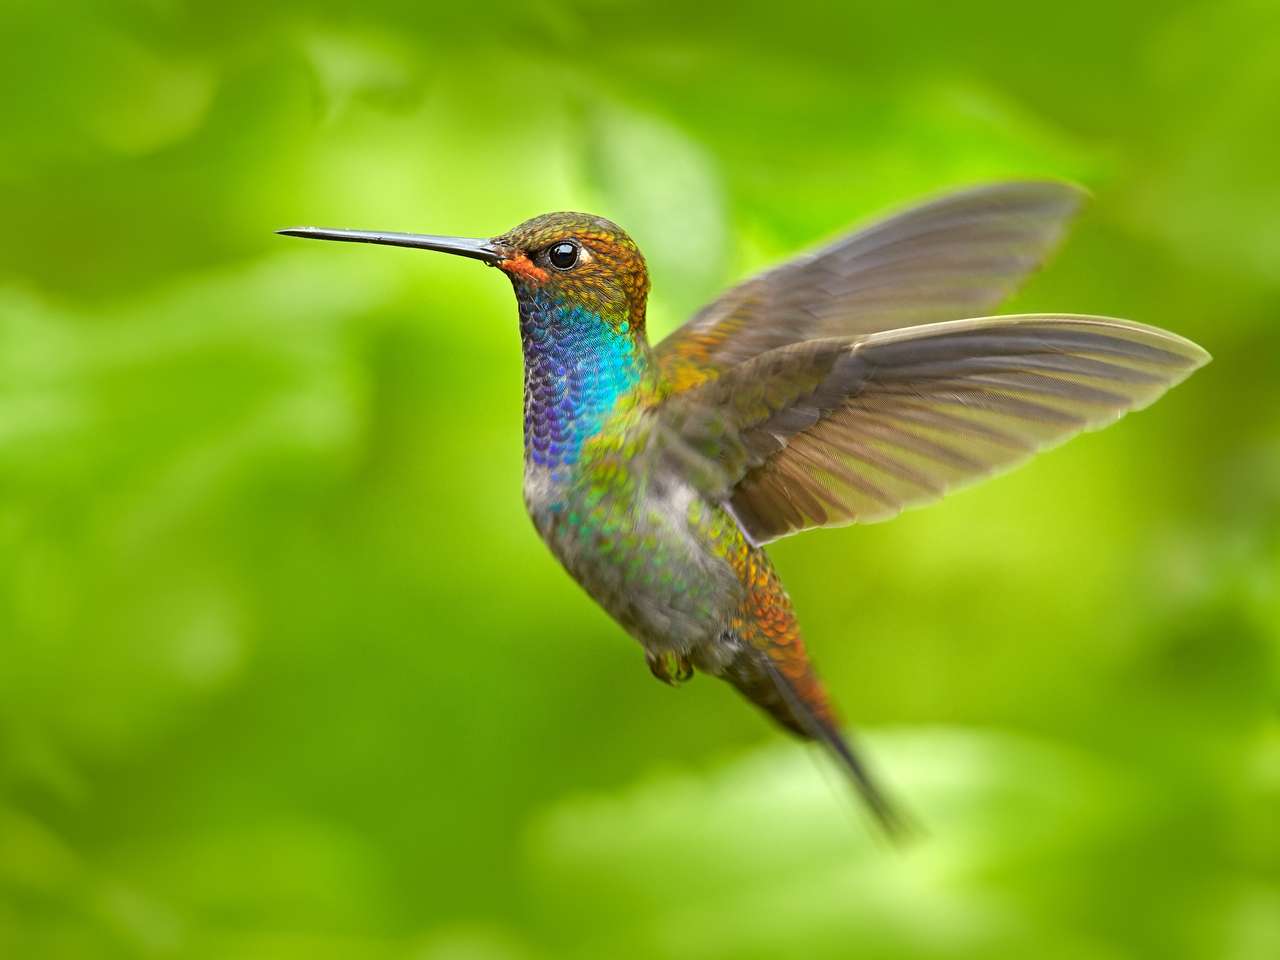 Színes hummingbird repülés közben online puzzle